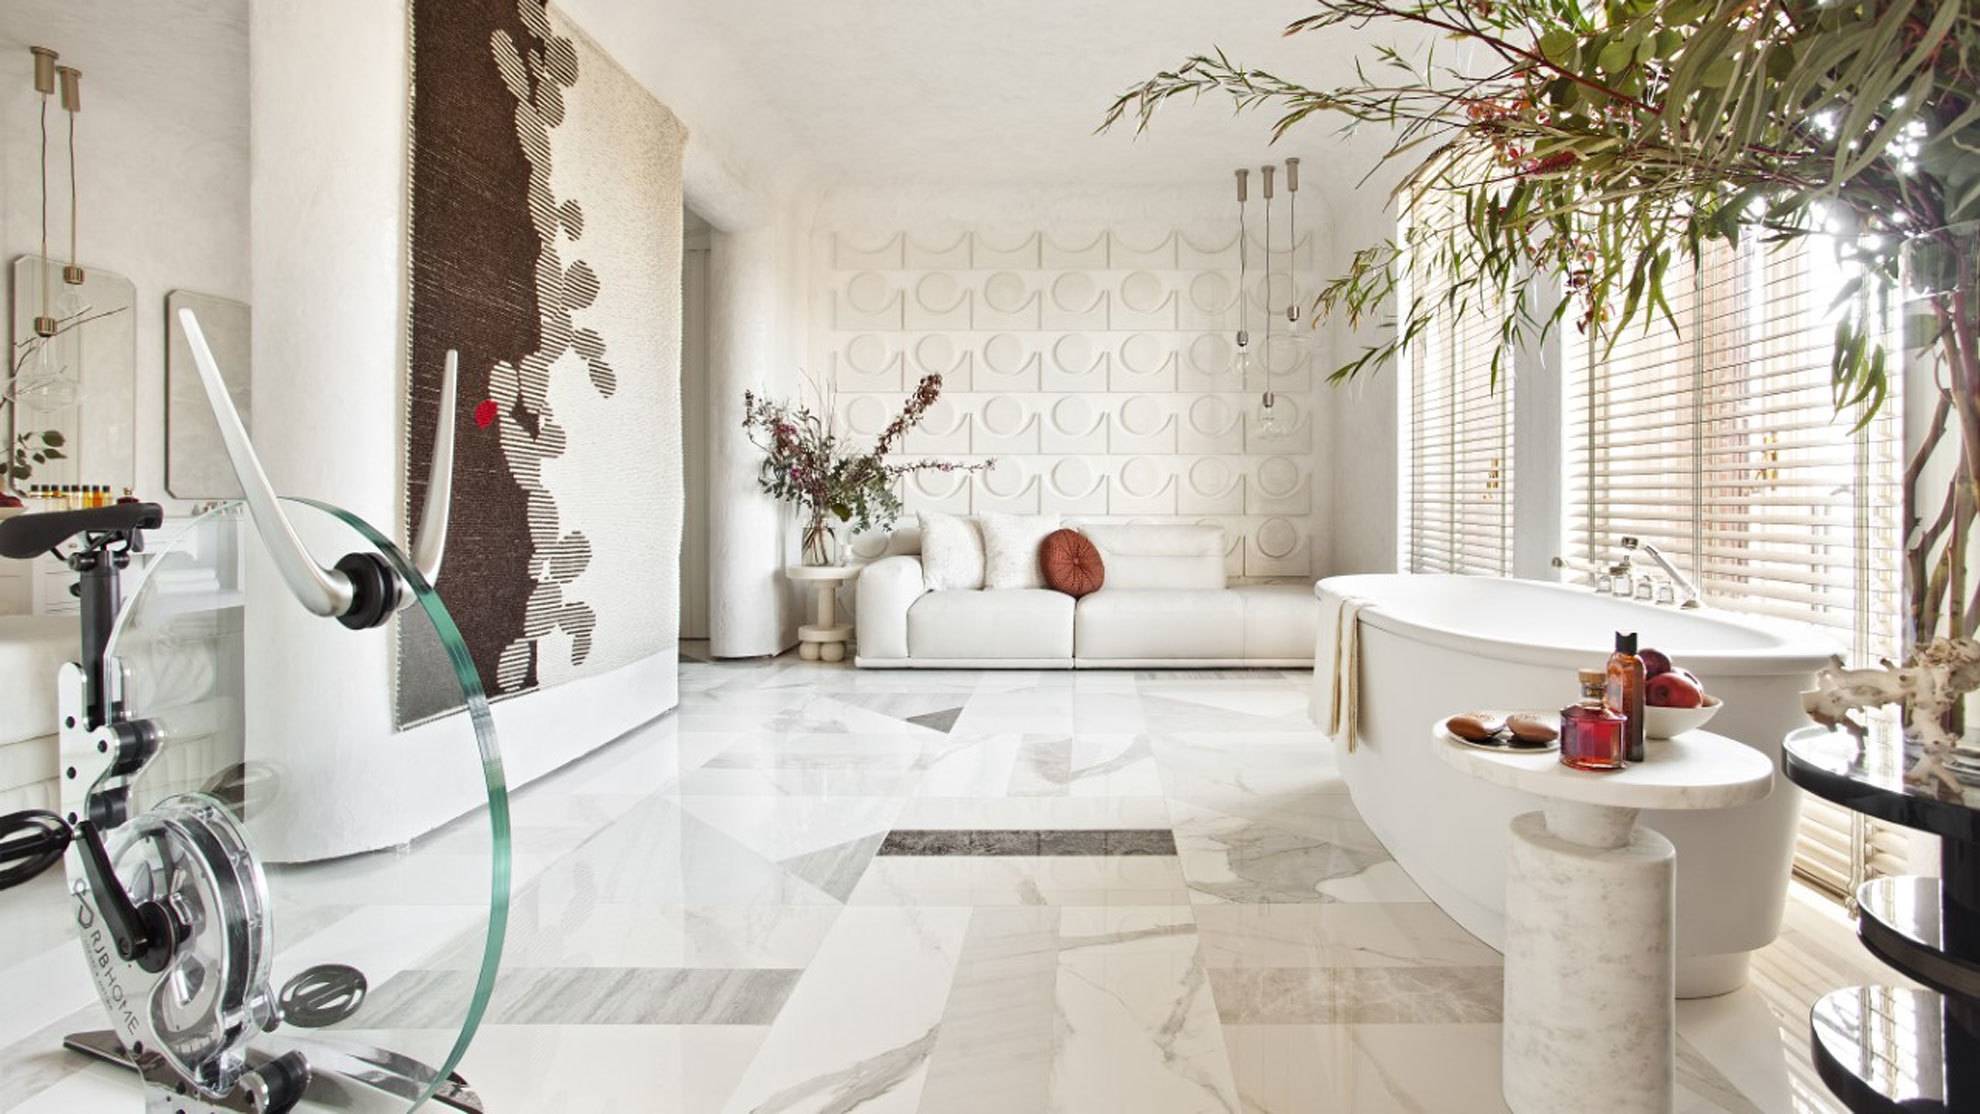 ITA presenta su espacio 'Suite Italia' para Casa Decor por Raúl Martins